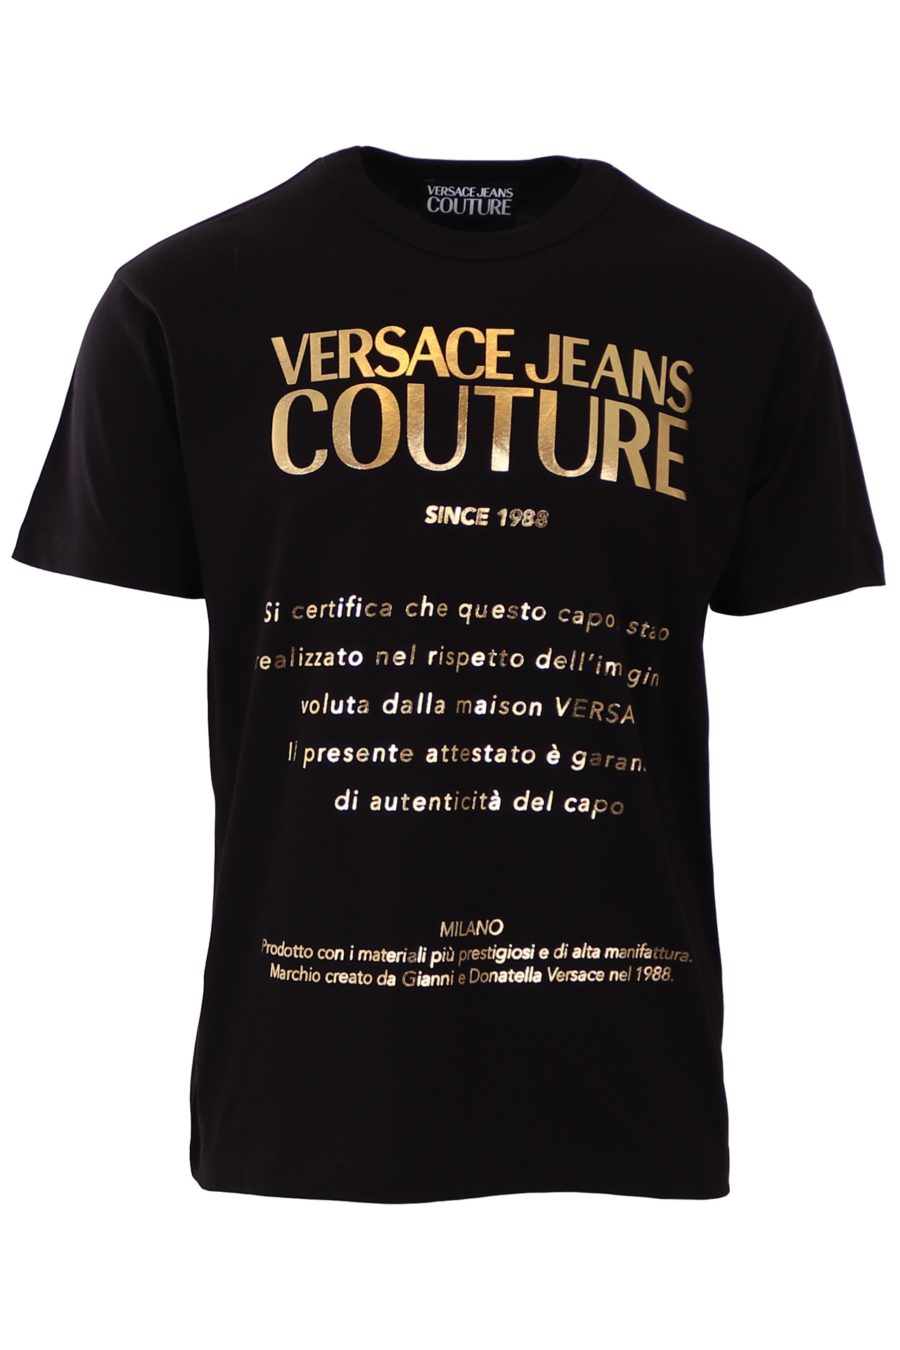 T-shirt ordinaire Versace Jeans Couture noir avec écriture dorée - 9fa1c30787e7a787a7ce5cbea778e92f4679604e